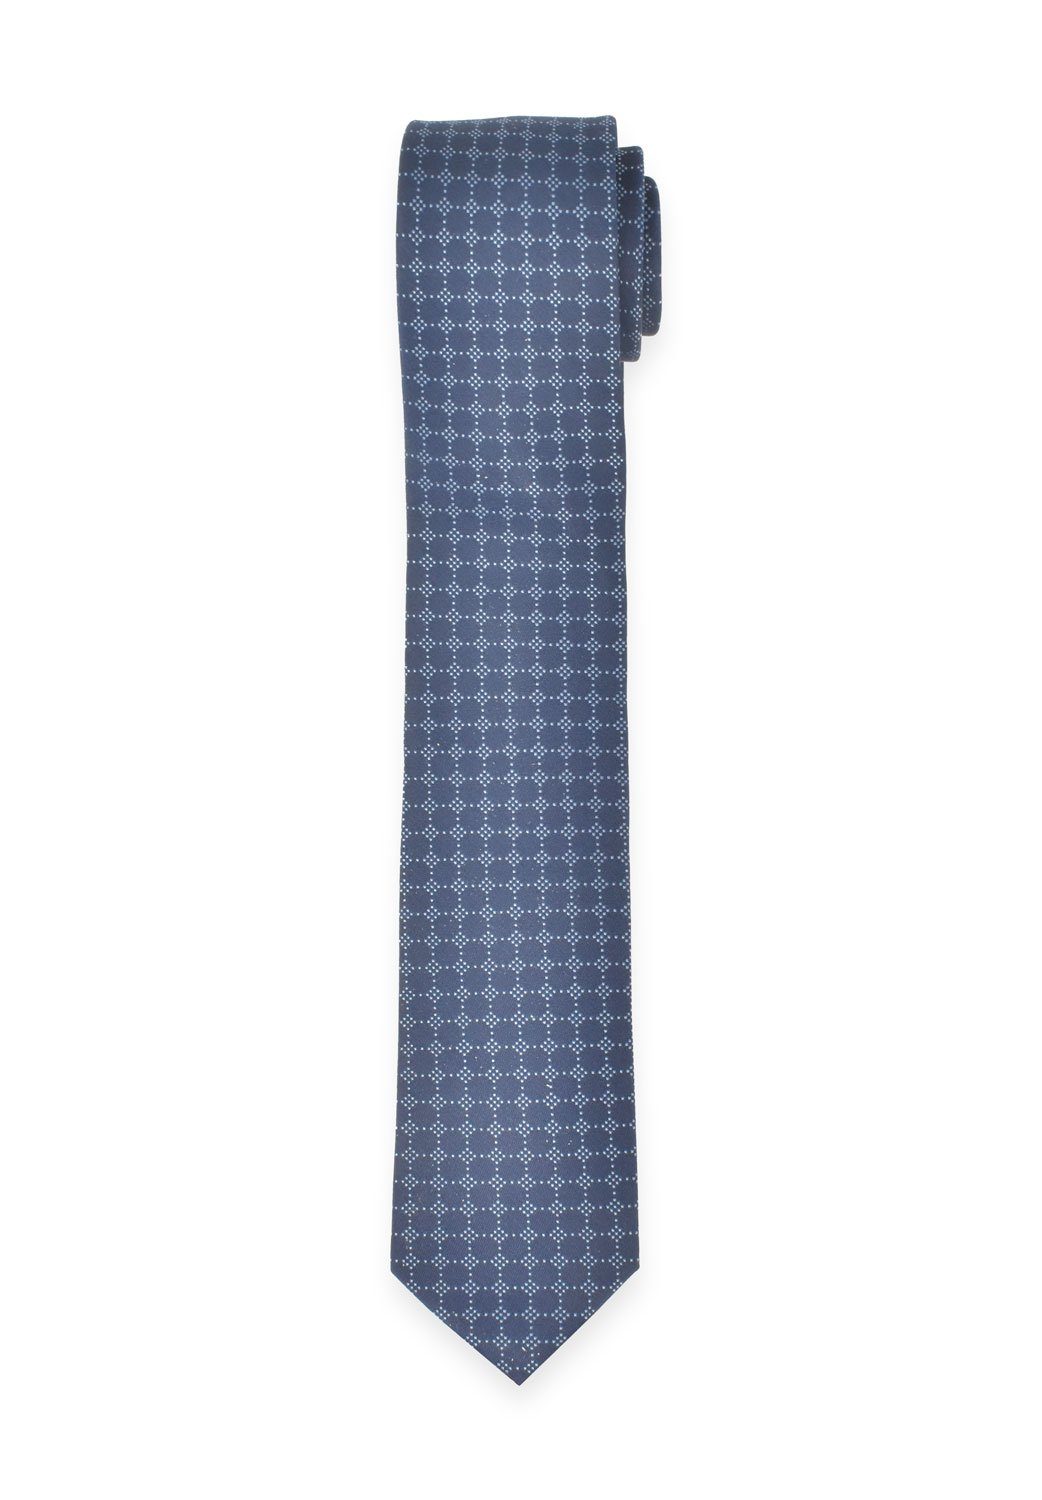 MARVELIS Krawatte Krawatte - Punkte - Hellblau/Dunkelblau - 6,5 cm